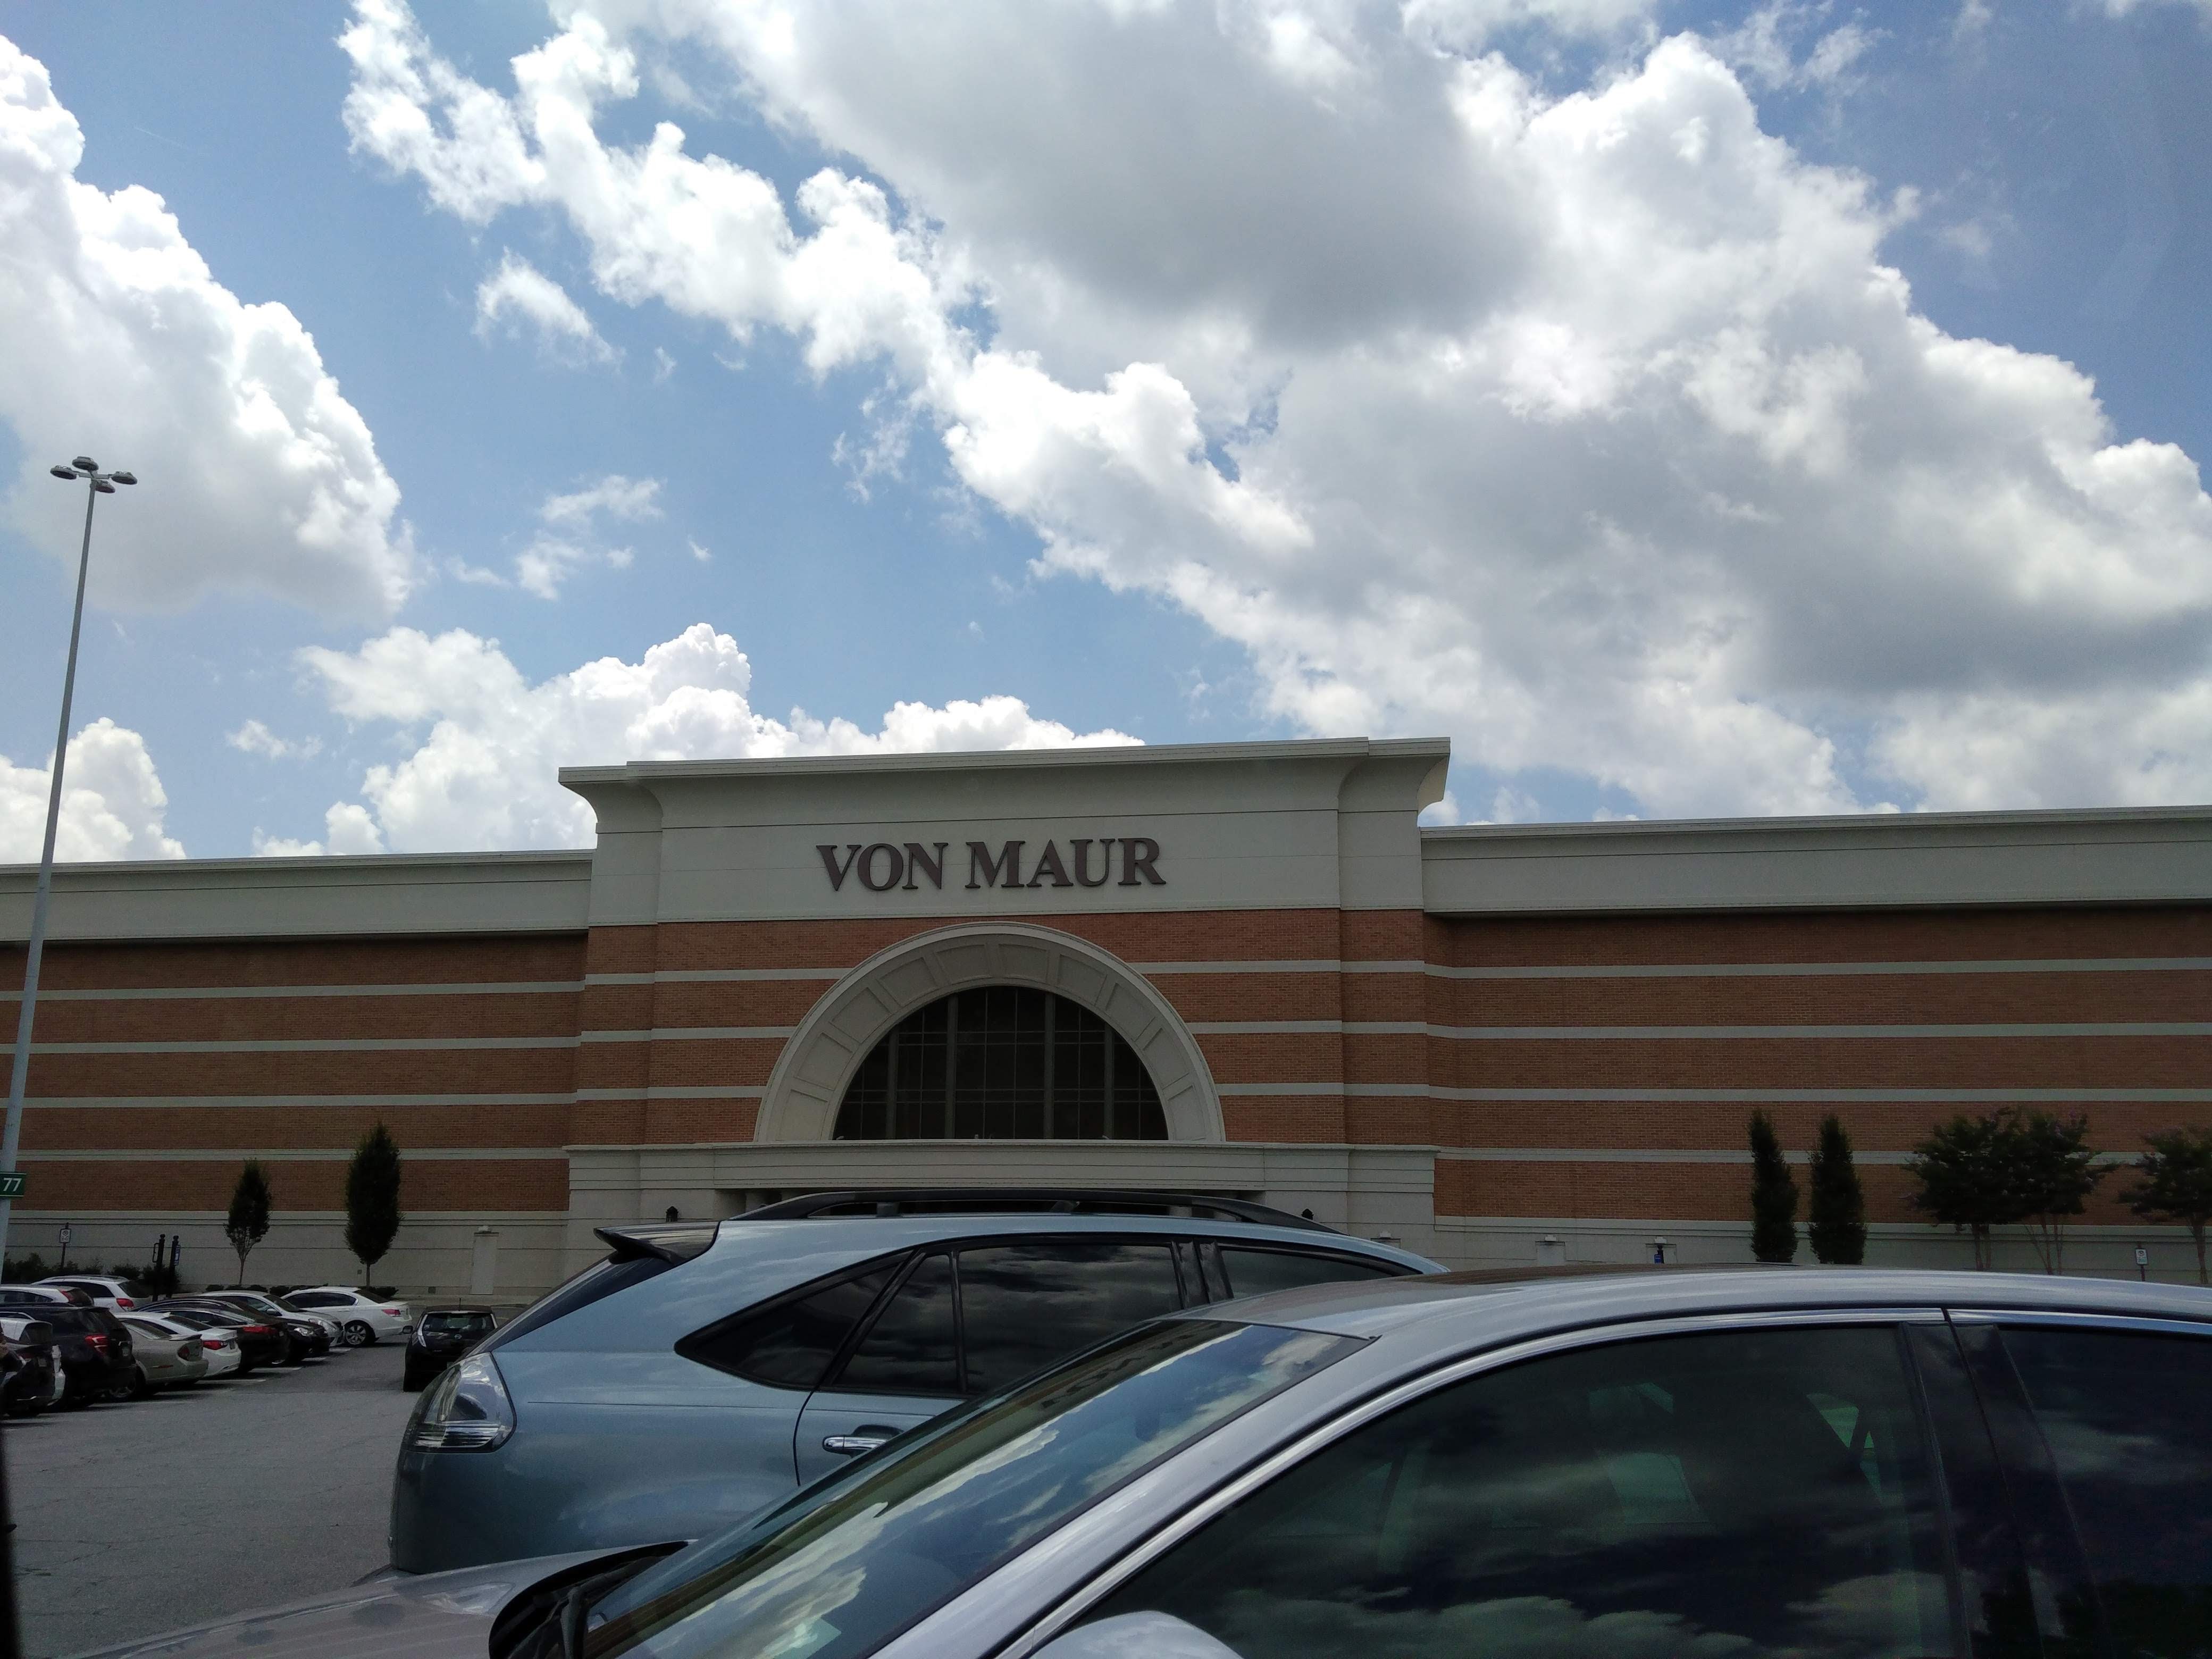 Von Maur department store to anchor new Brookfield development